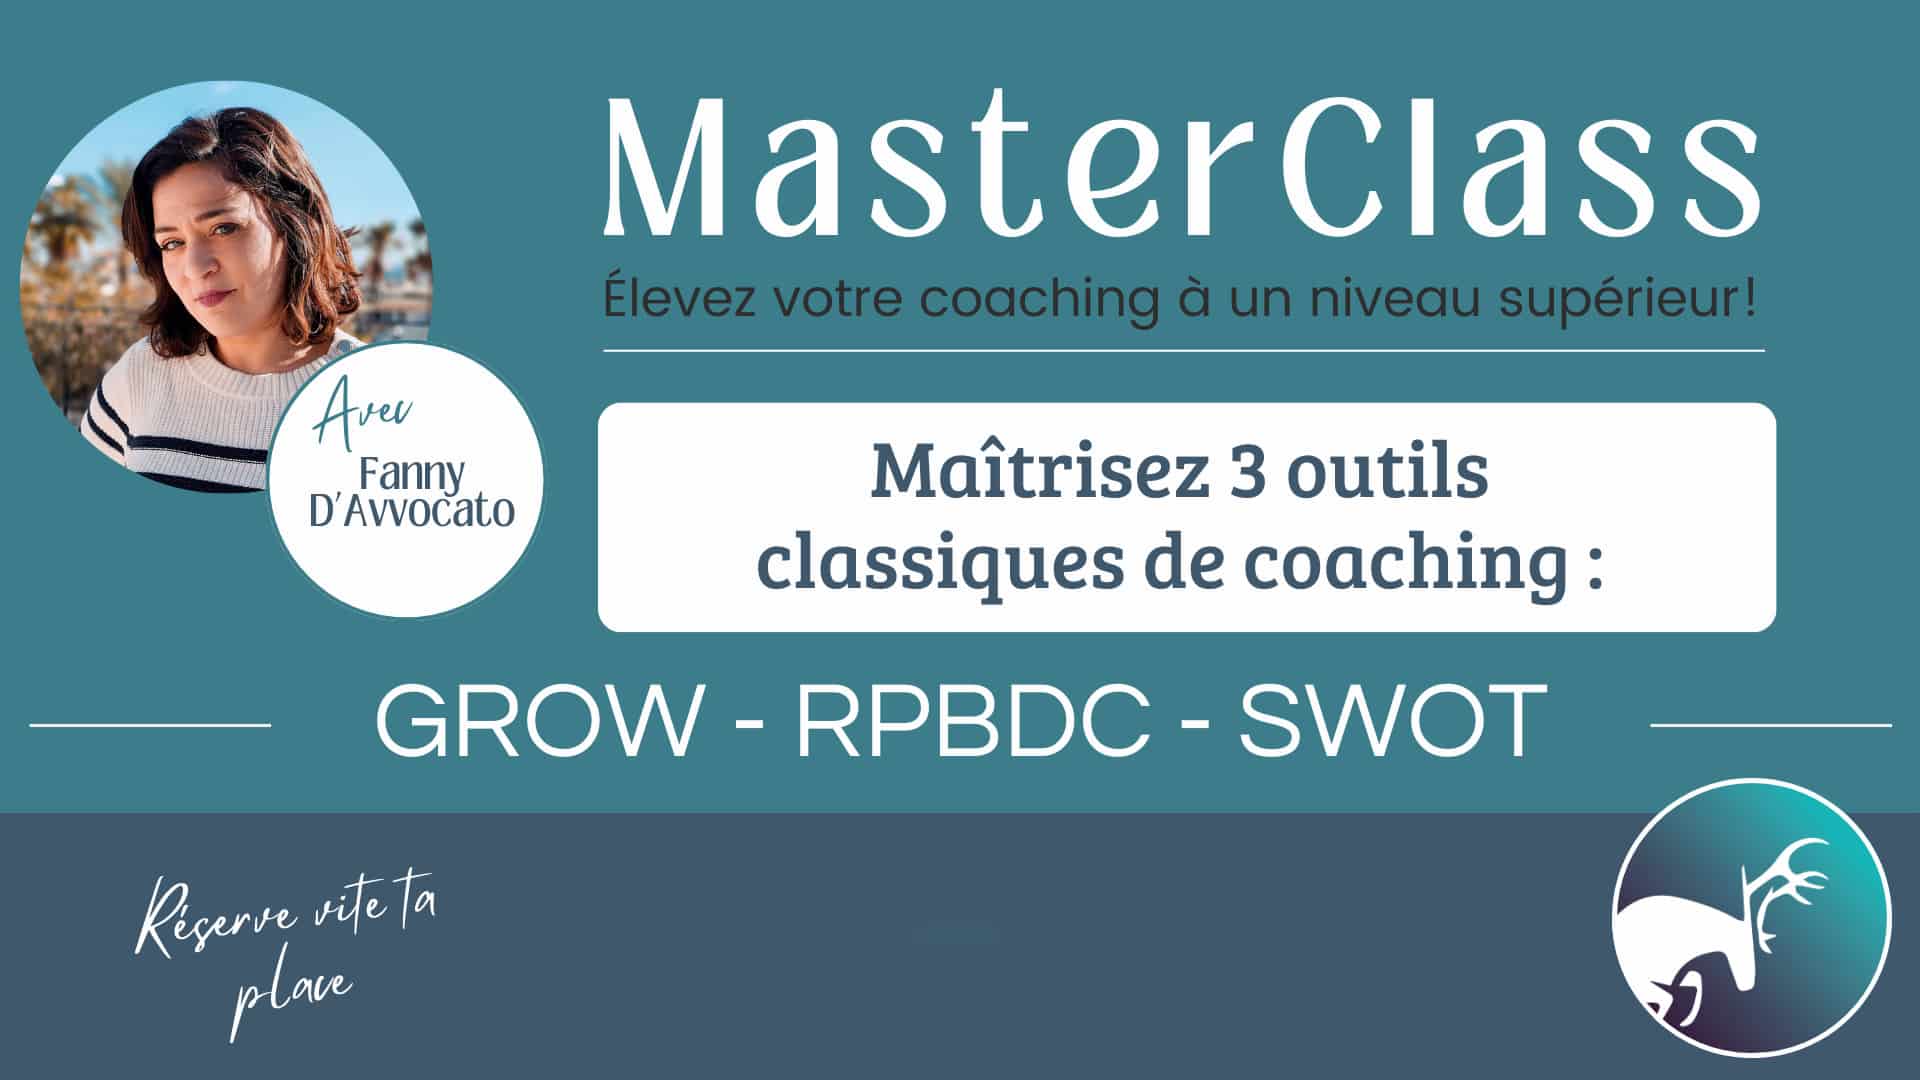 Masterclass GROW RPBDC et SWOT pour coaching - praticien de santé et du bien-être - thérapeute - Fanny D'Avvocato